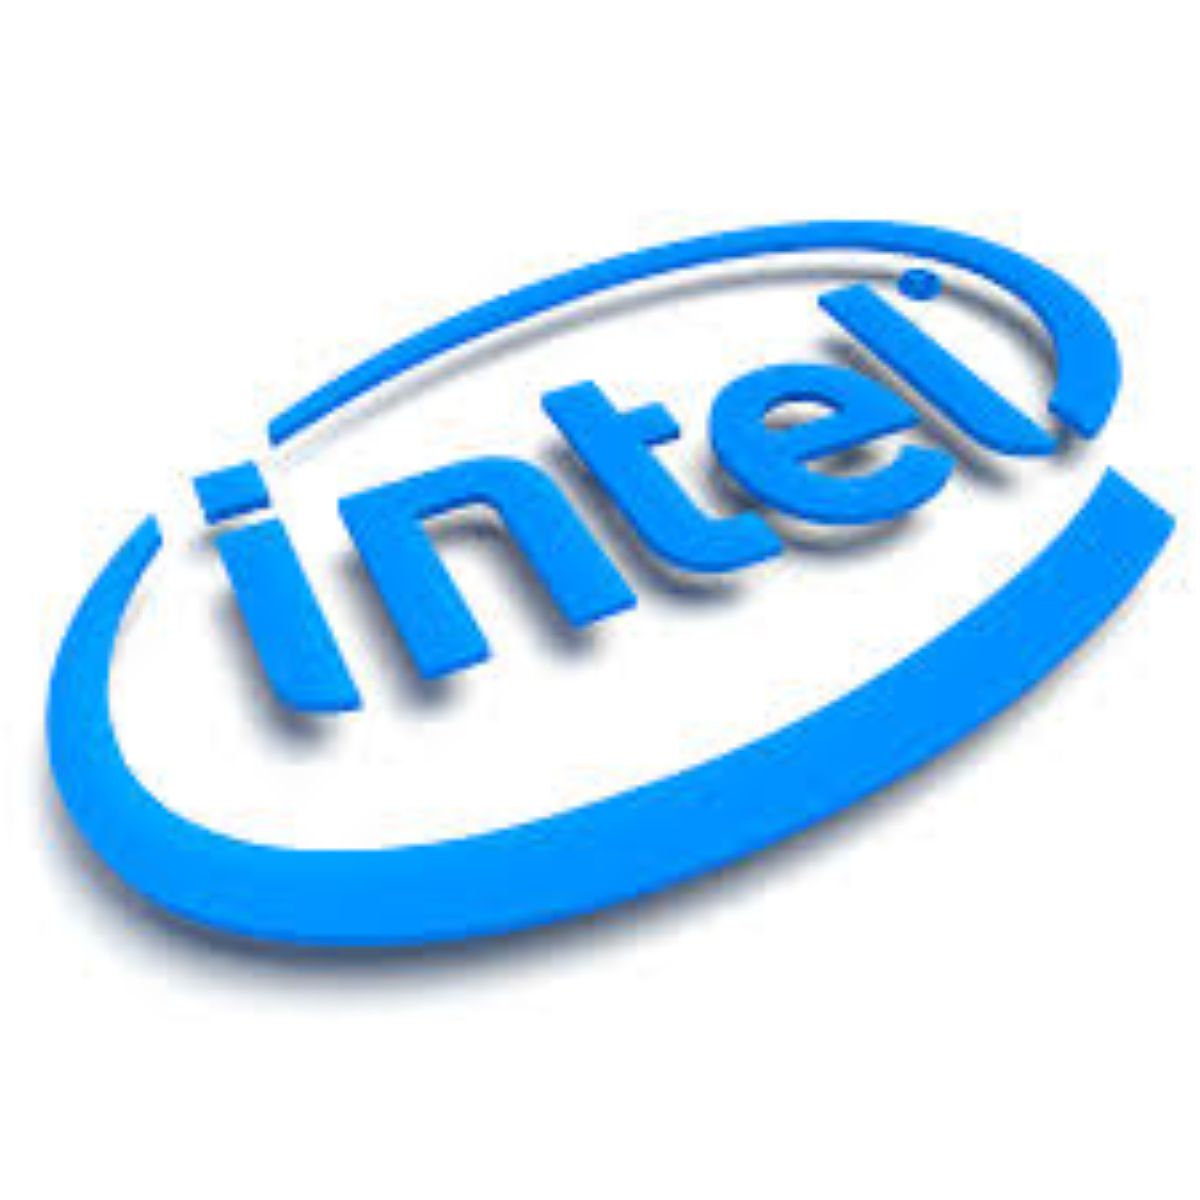 Ең қуатты суперкомпьютерді  Intel жасап шығармақ